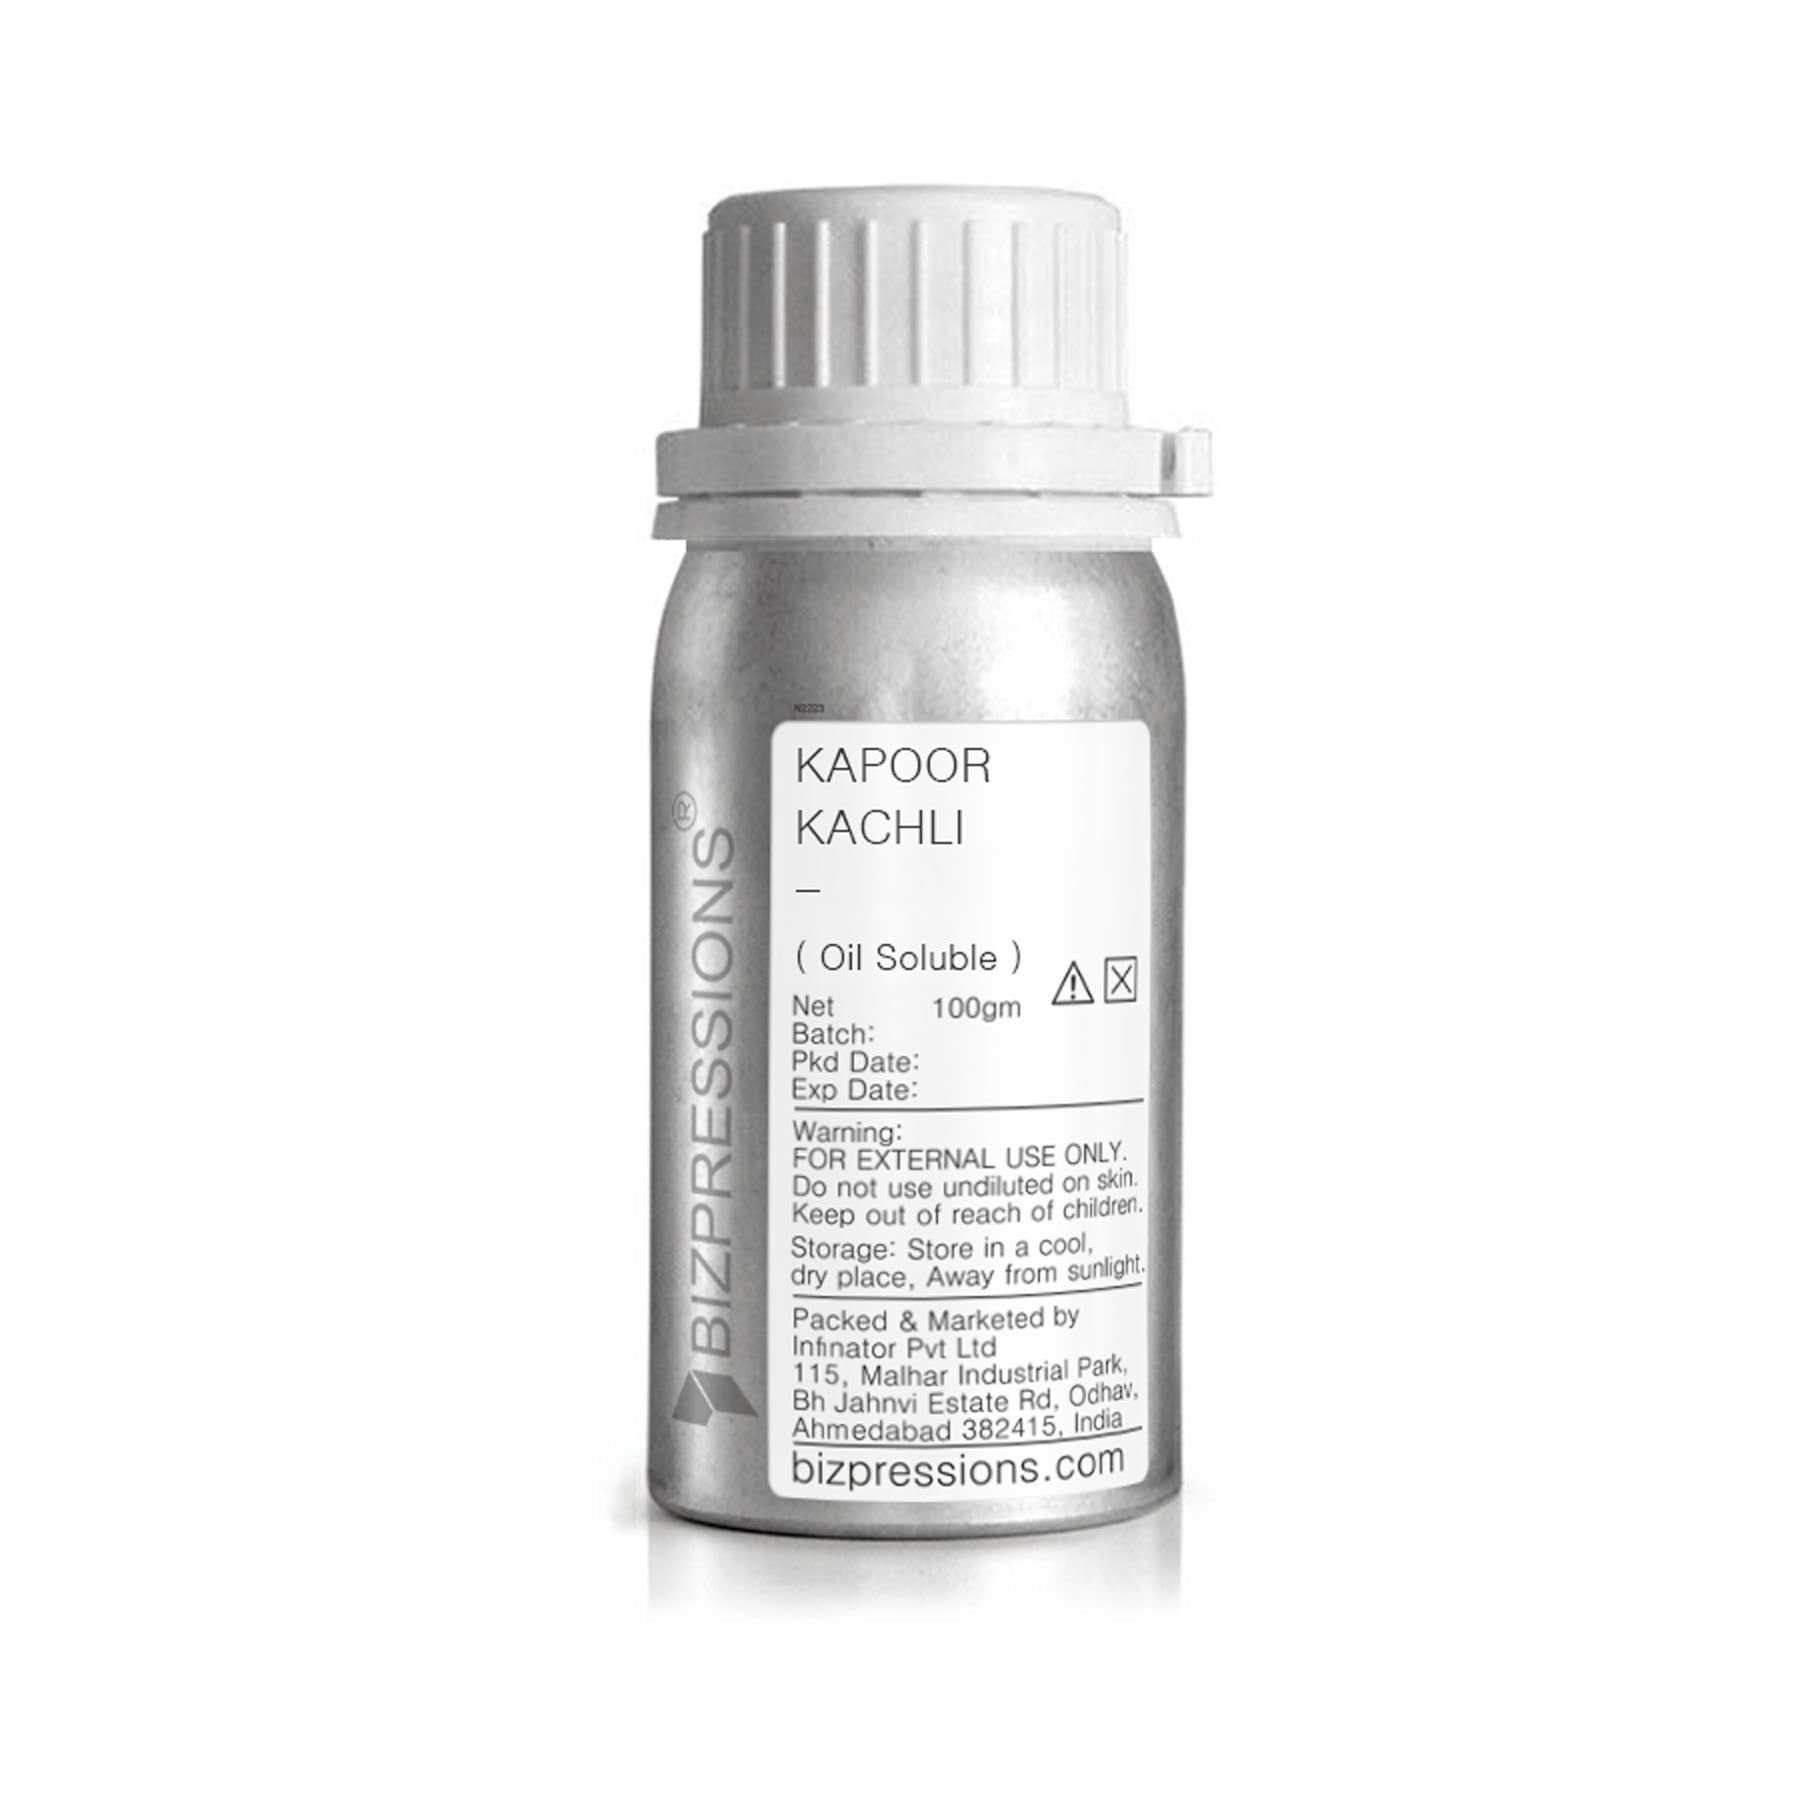 KAPOOR KACHLI - A - Fragrance ( Oil Soluble ) - 100 gm